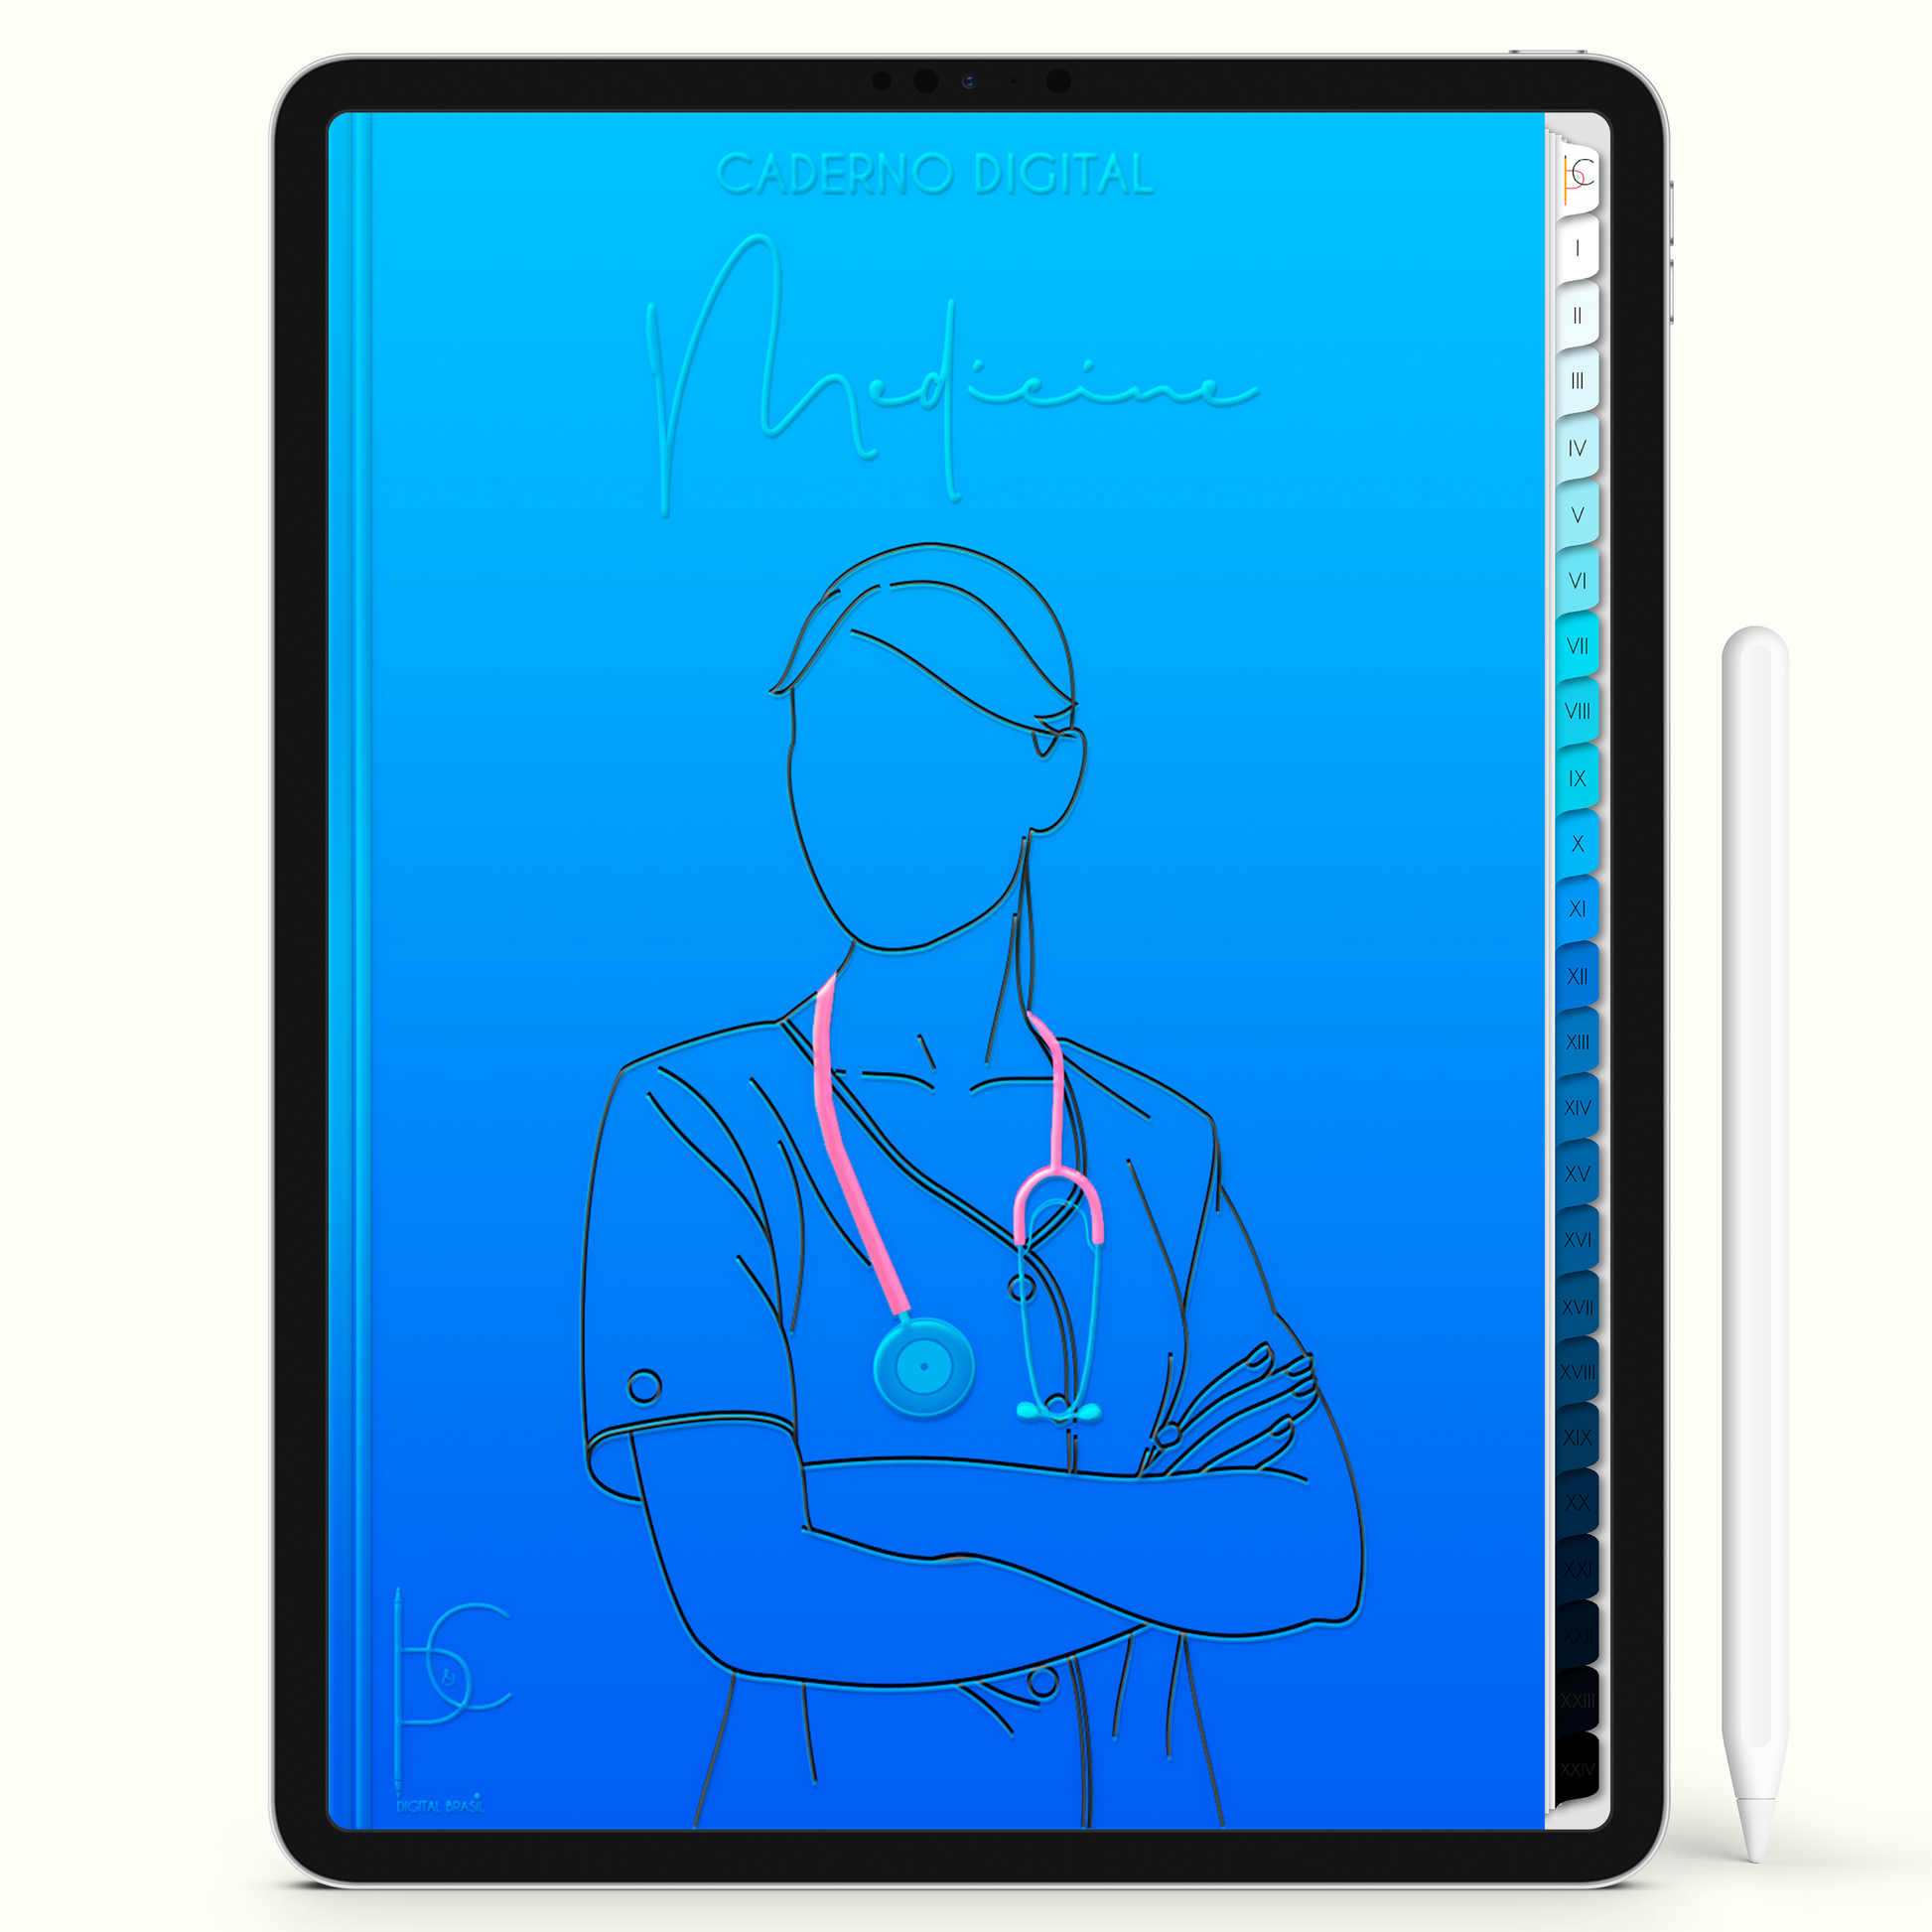 Caderno Digital 24 Matérias - Medicina, para ipad e tablet android. Cadernos & Planner Digital Brasil